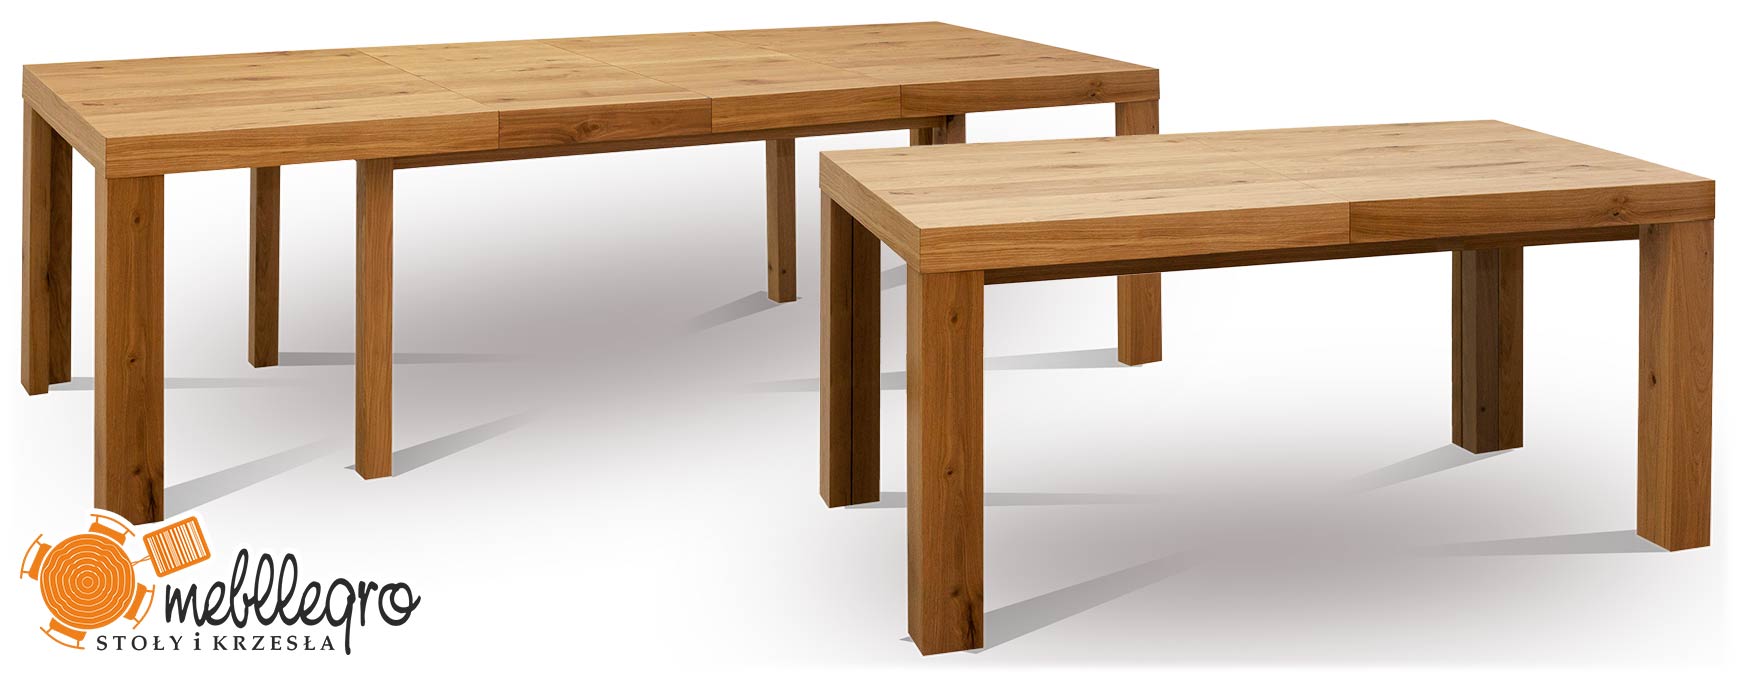 Stół S26 rozkładany drewniany 8 nóg